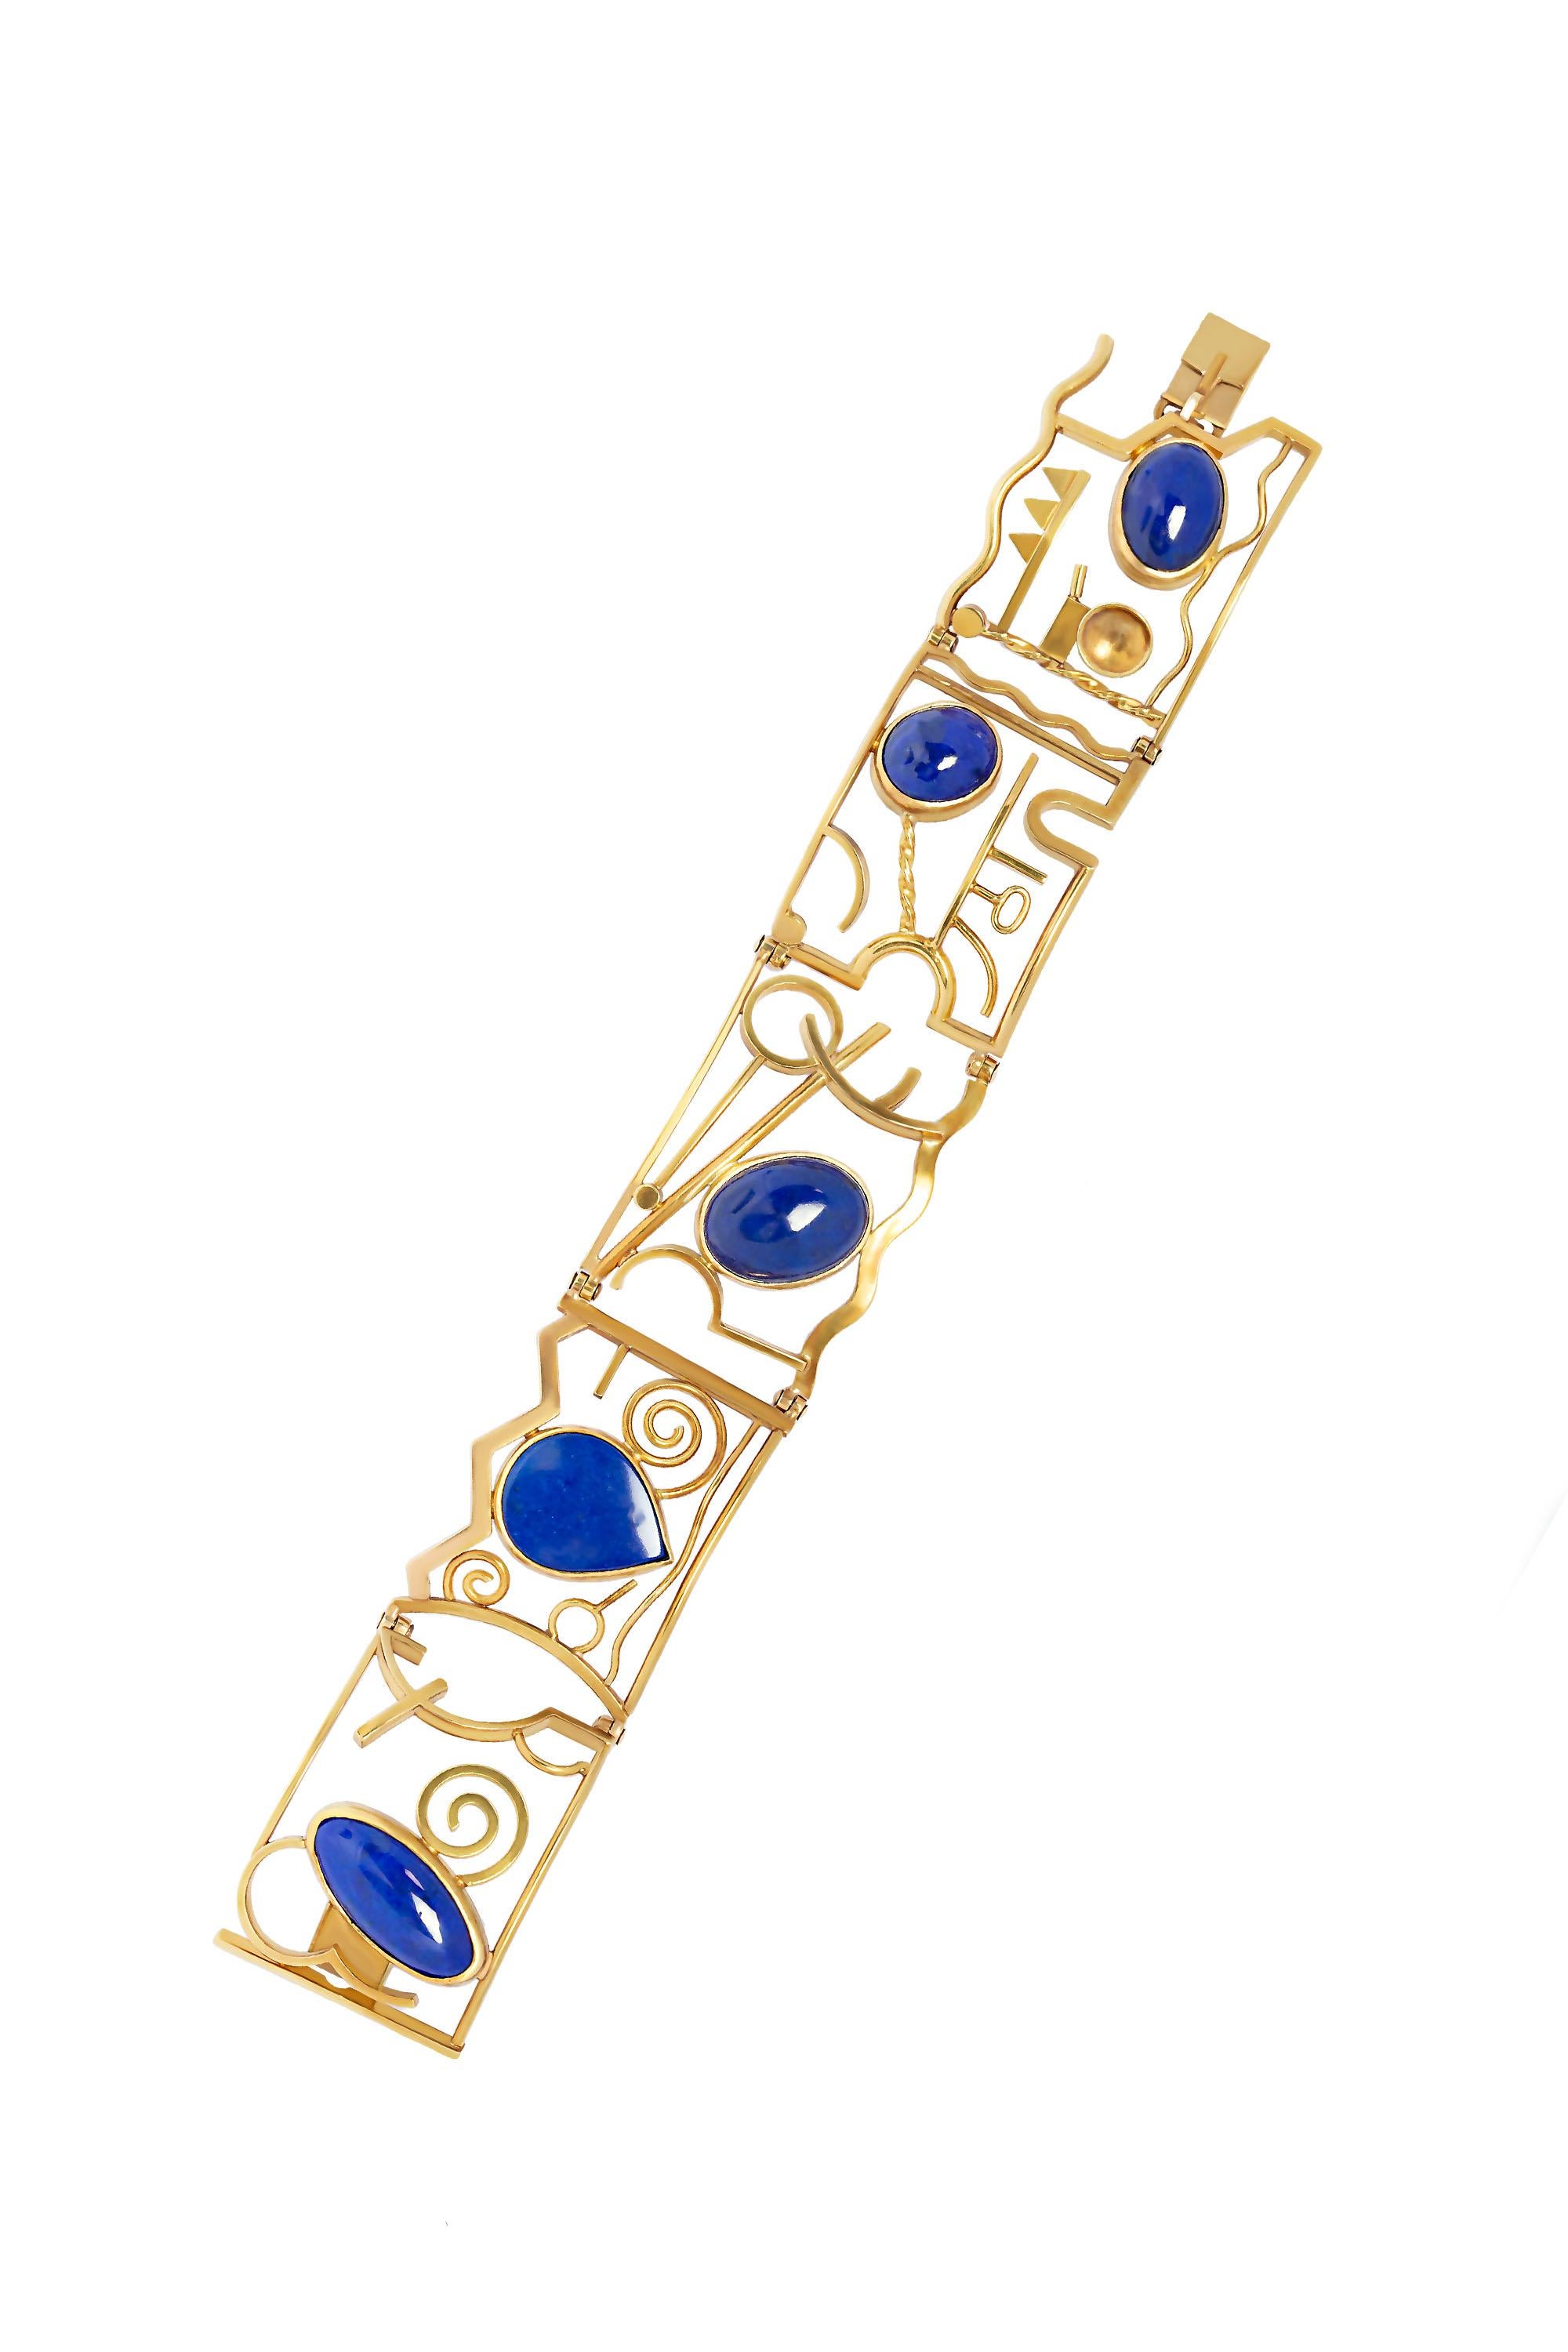 Ein modernes, abstraktes Armband mit Lapislazuli. Handgefertigt aus 14 Karat Gelbgold.  Misst 7